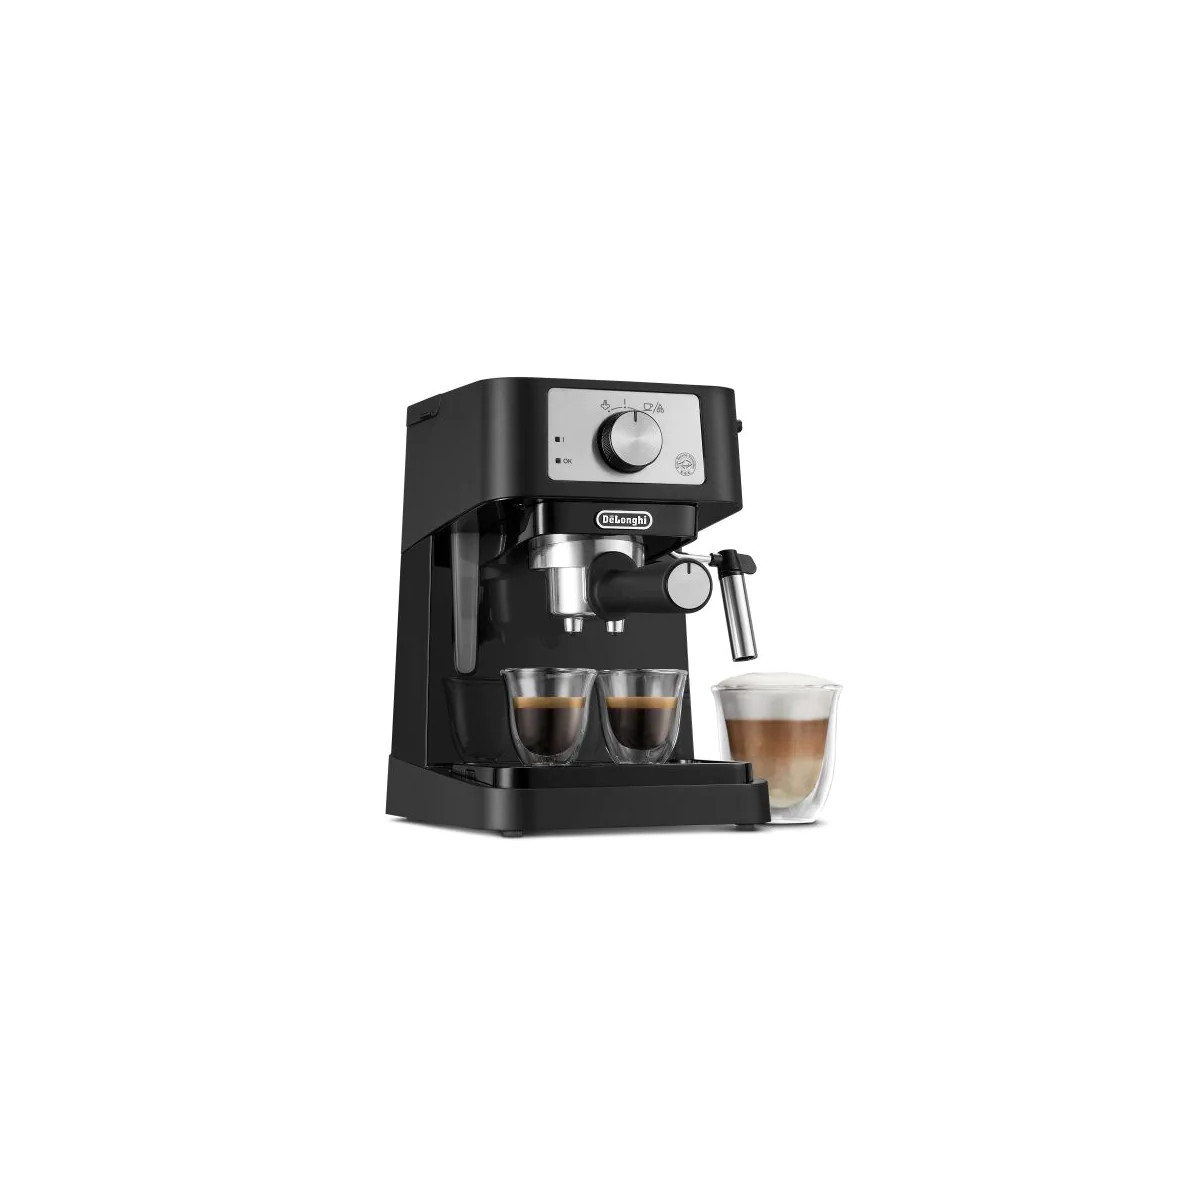 Delonghi Machine à café à percolateur - Noire